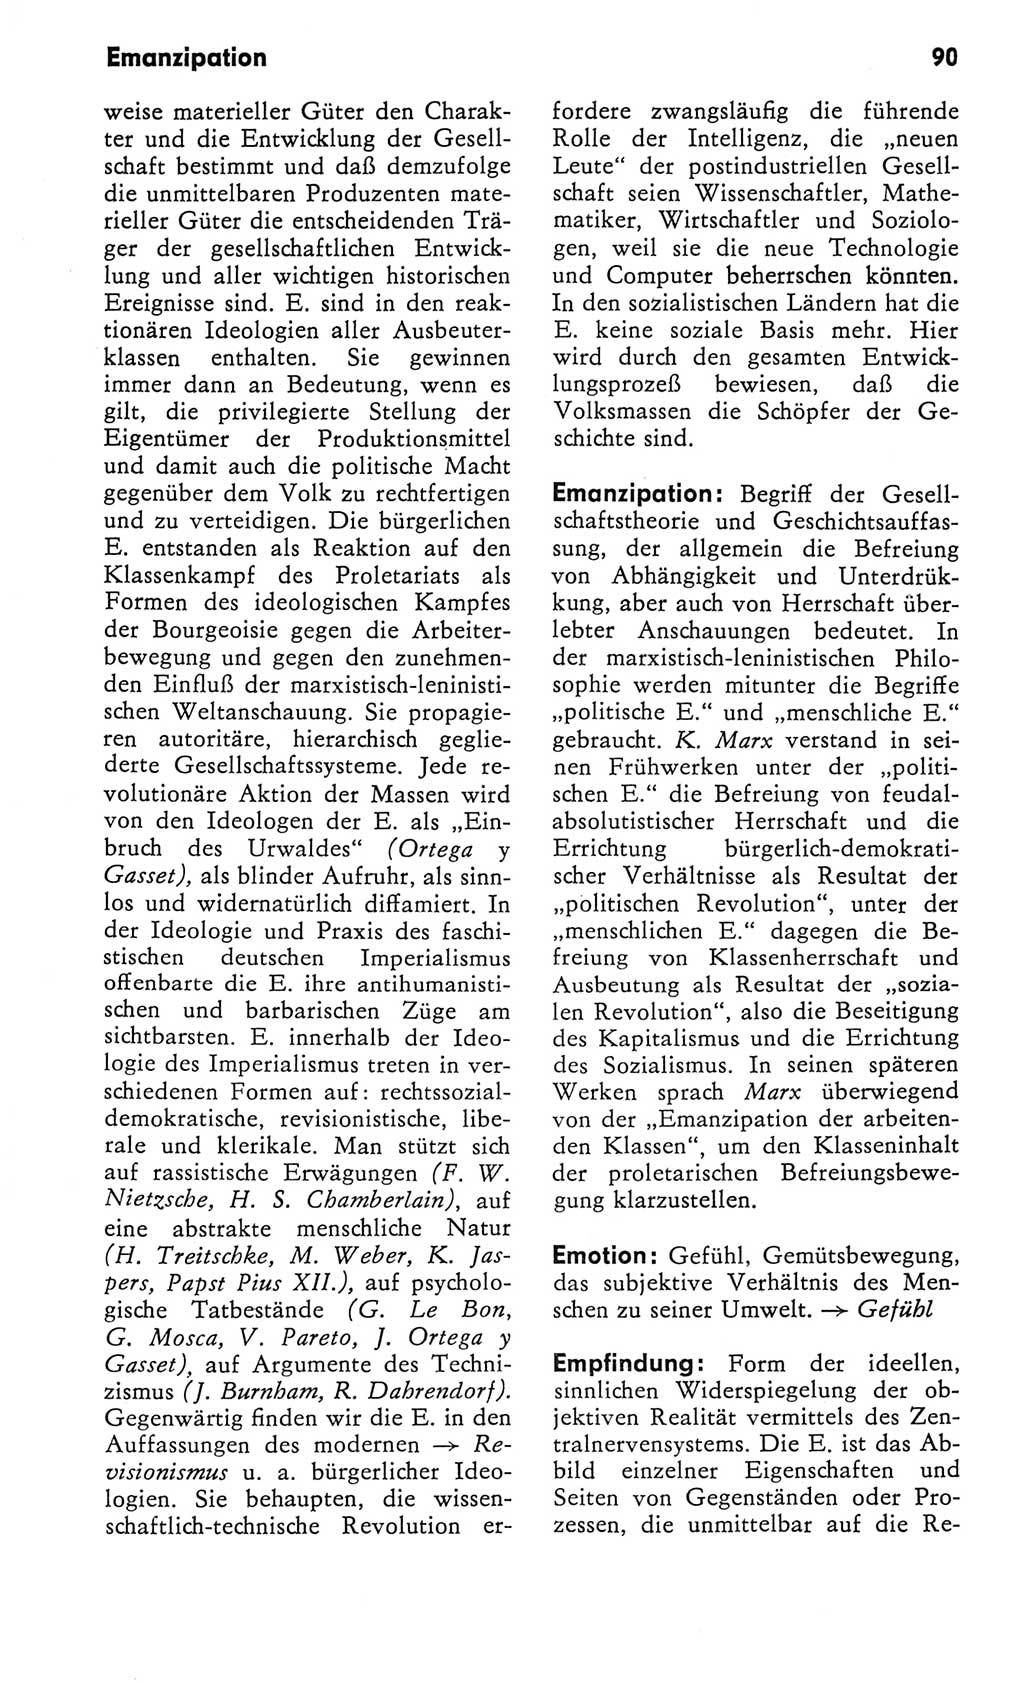 Kleines Wörterbuch der marxistisch-leninistischen Philosophie [Deutsche Demokratische Republik (DDR)] 1982, Seite 90 (Kl. Wb. ML Phil. DDR 1982, S. 90)